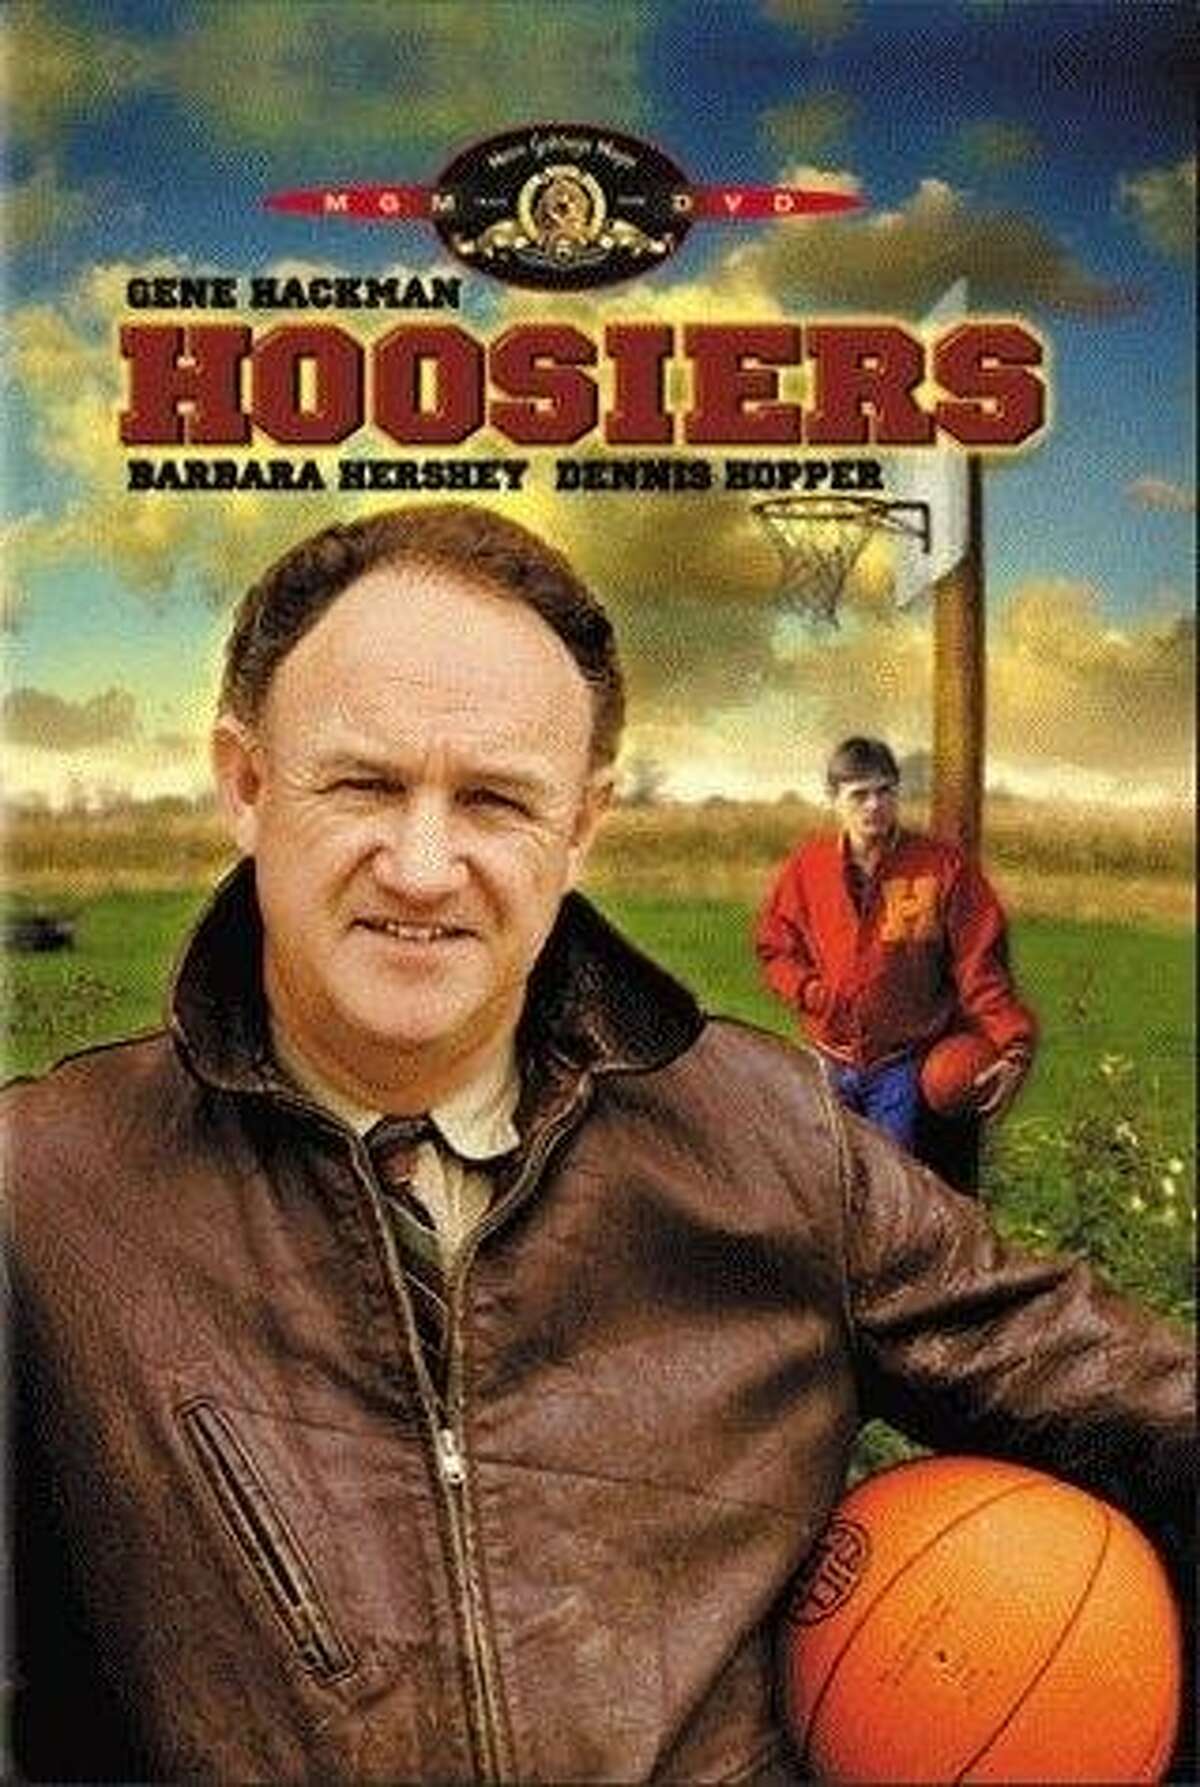 Hoosiers (1986) Starring Gene Hackman, Dennis Hopper and Barbara Hershey